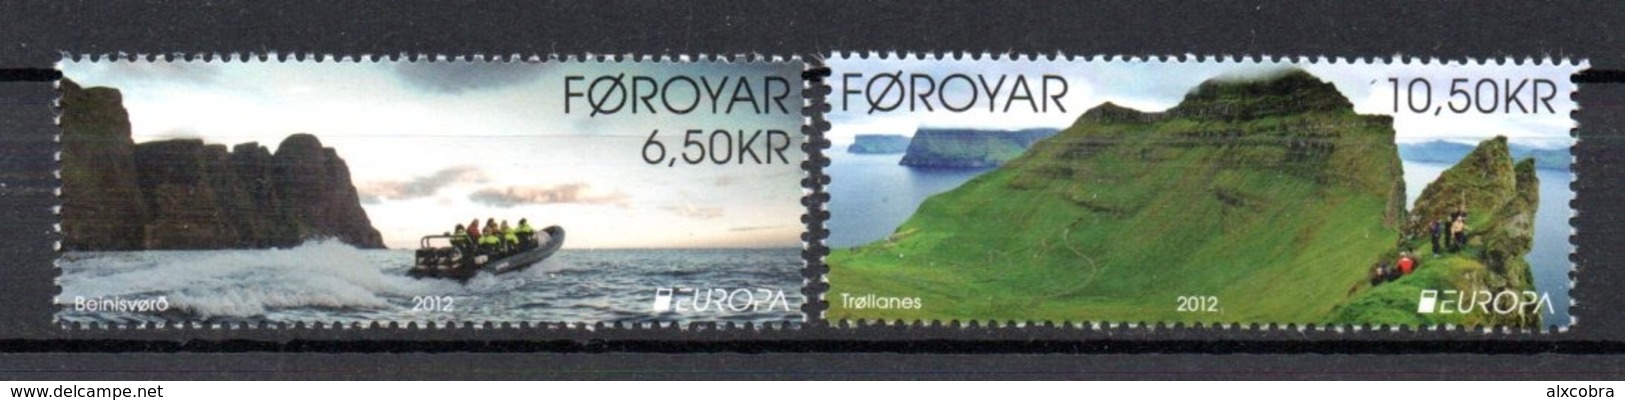 Europa CEPT 2012 Feroe Foroyar Faroe MNH - 2012